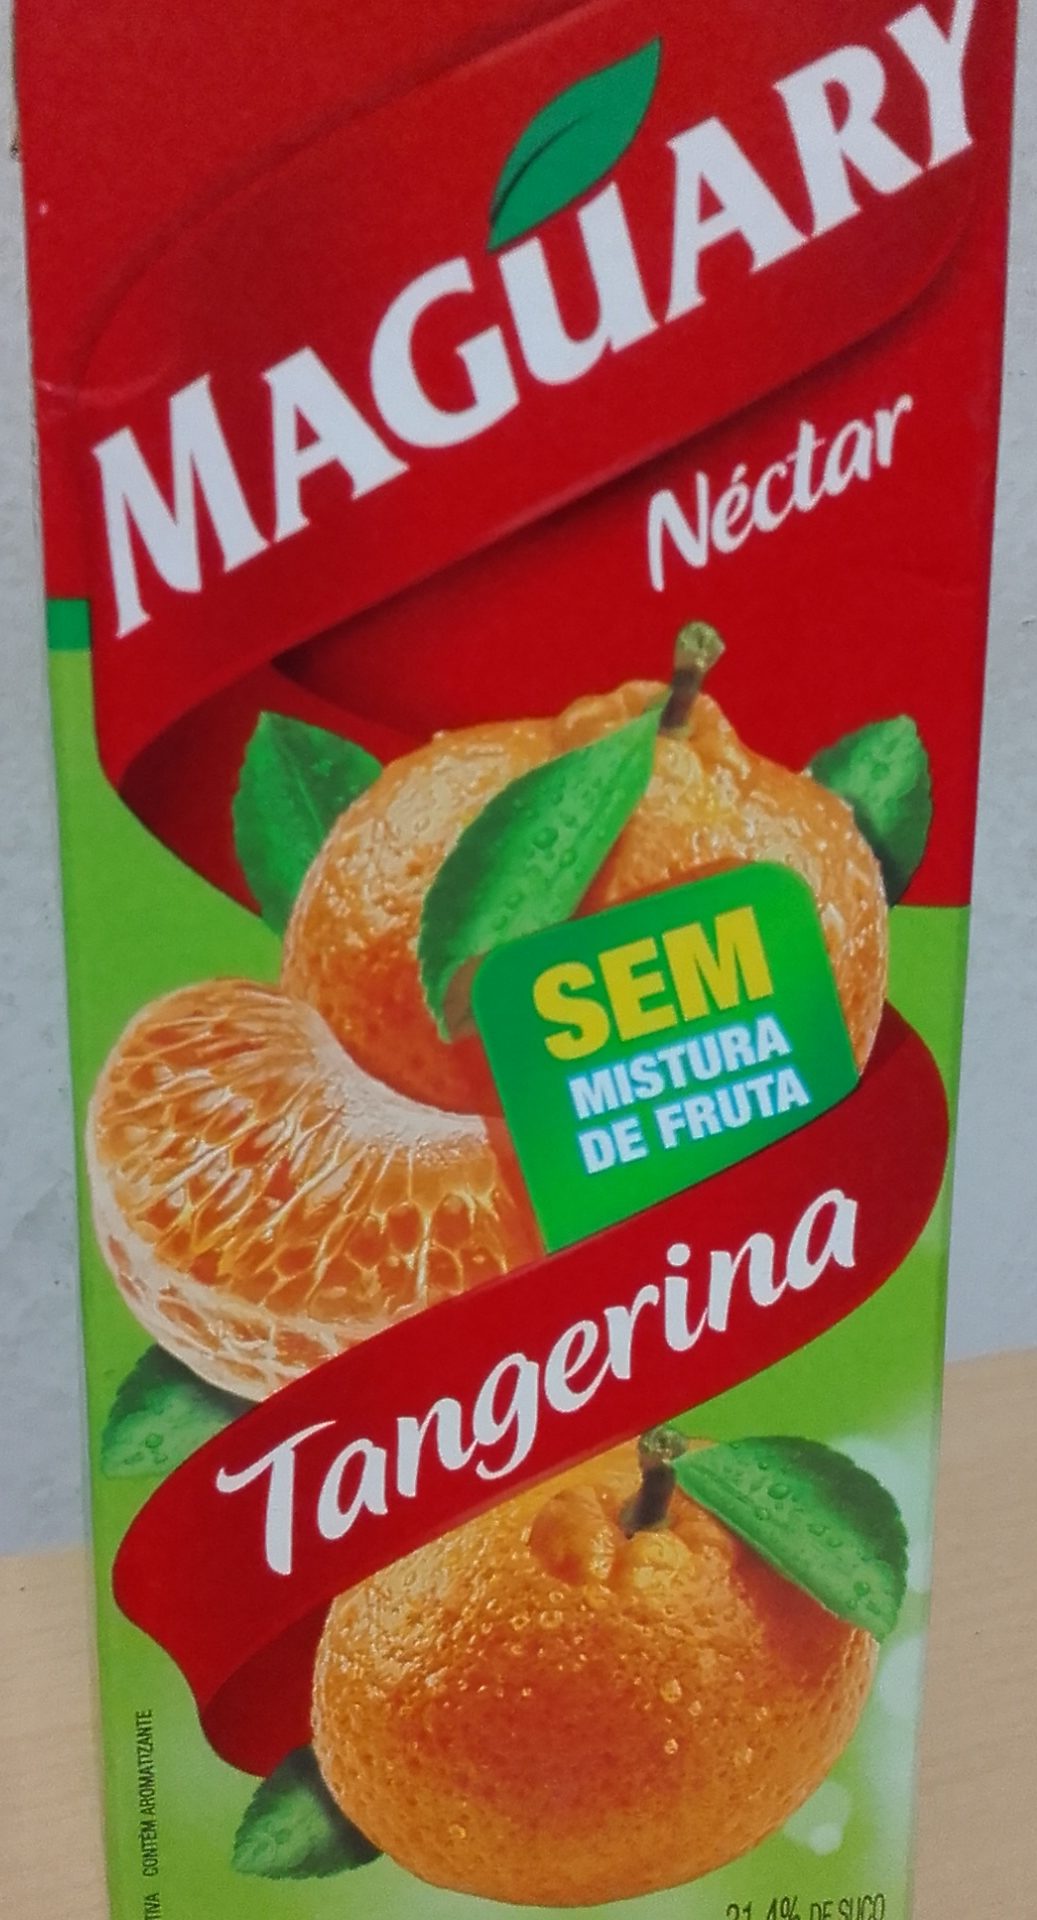 Maguary Néctar de Tangerina - Product - pt